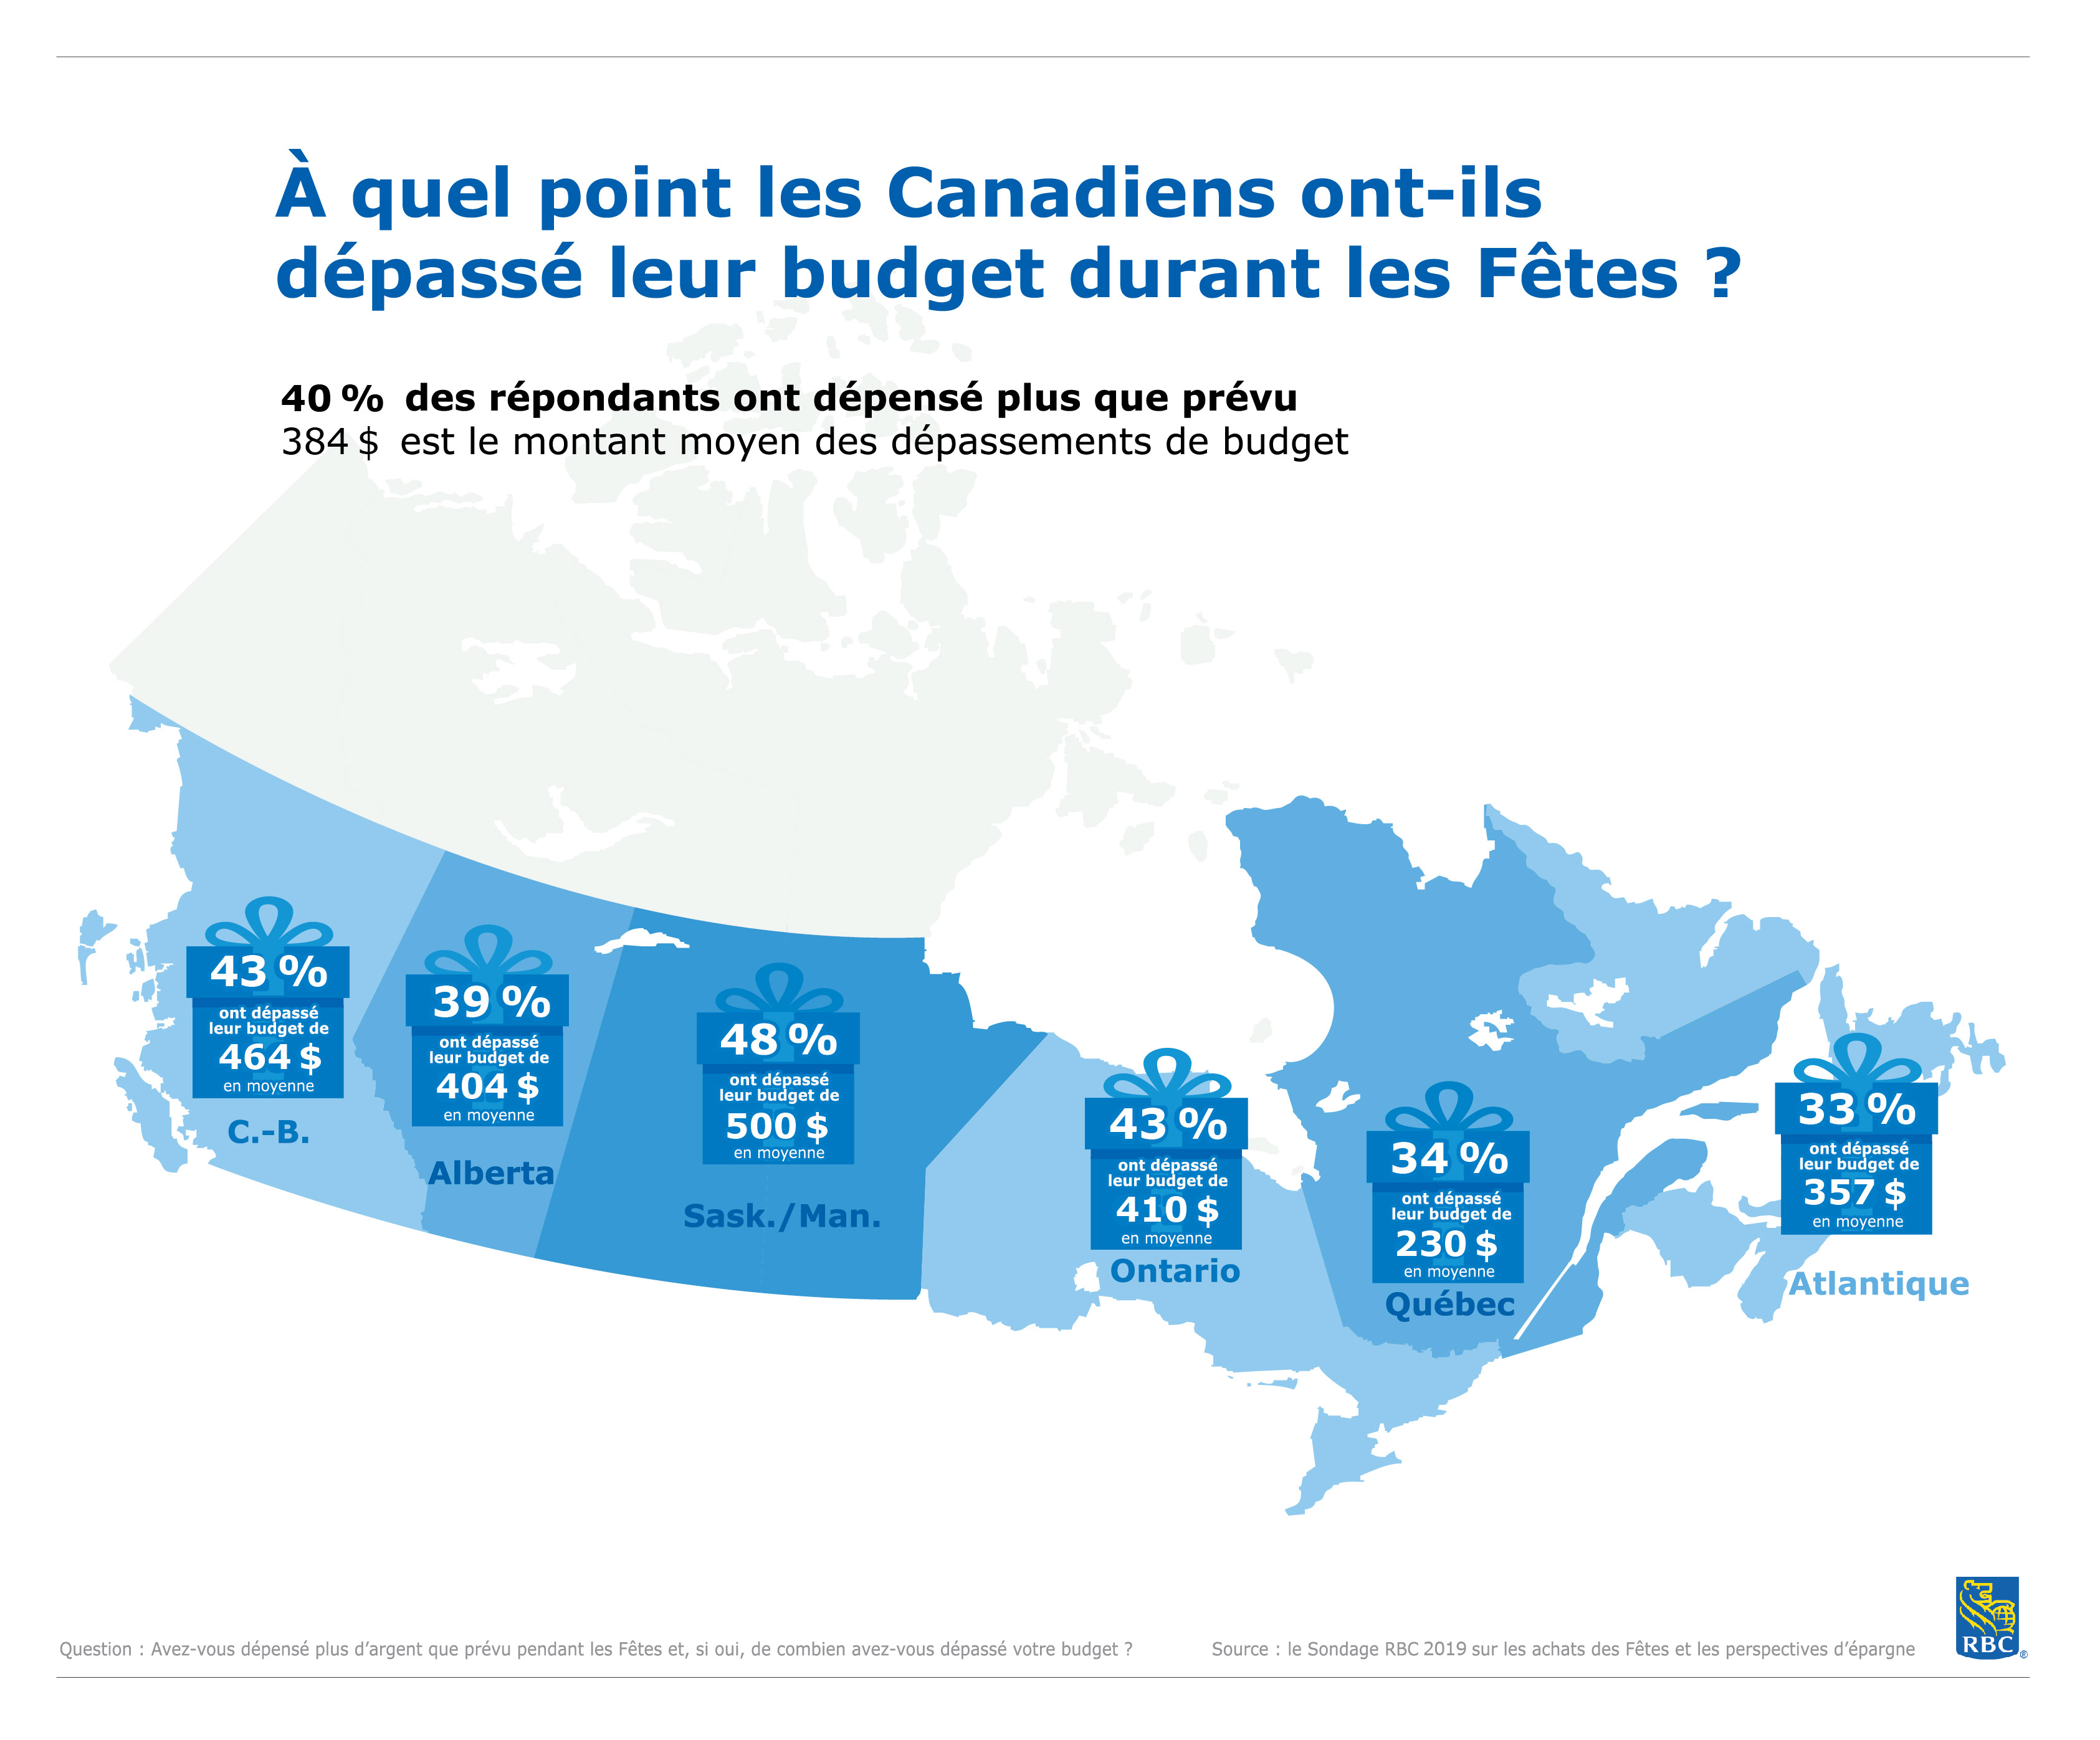 Moins d’endettement en cadeau : Les dépenses excédentaires des Canadiens ont chuté lors des dernières Fêtes